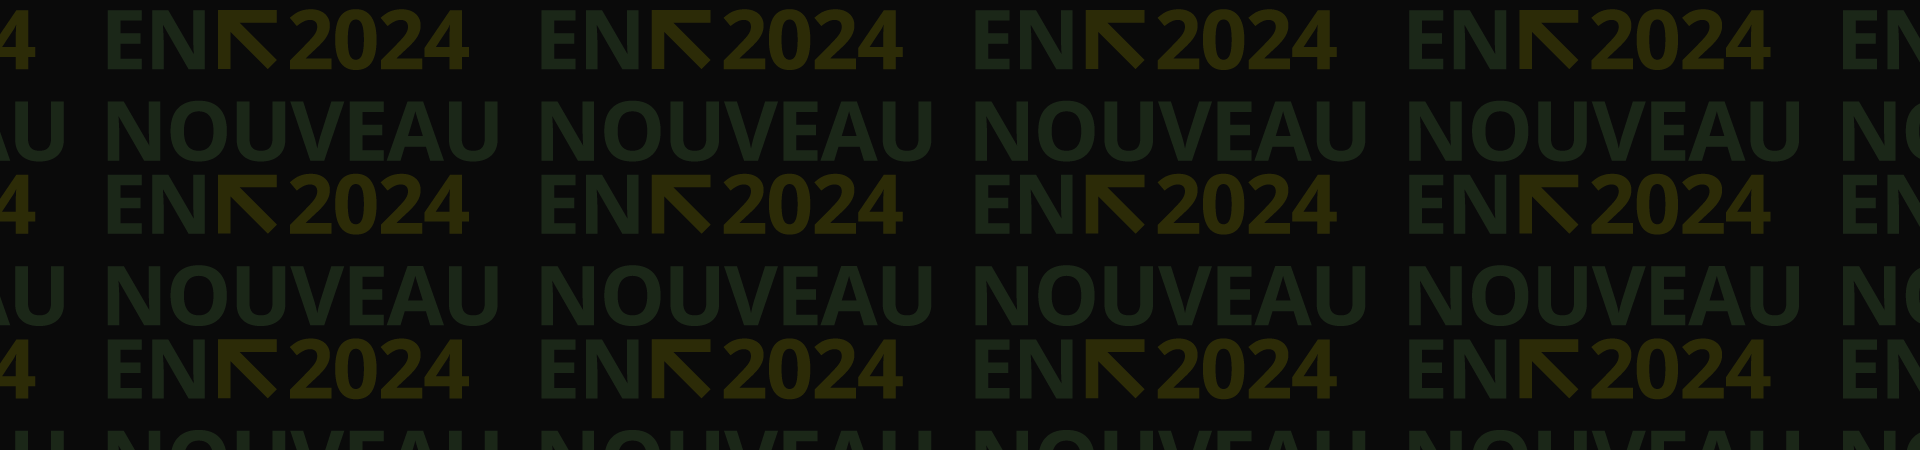 Nouveau En 2024